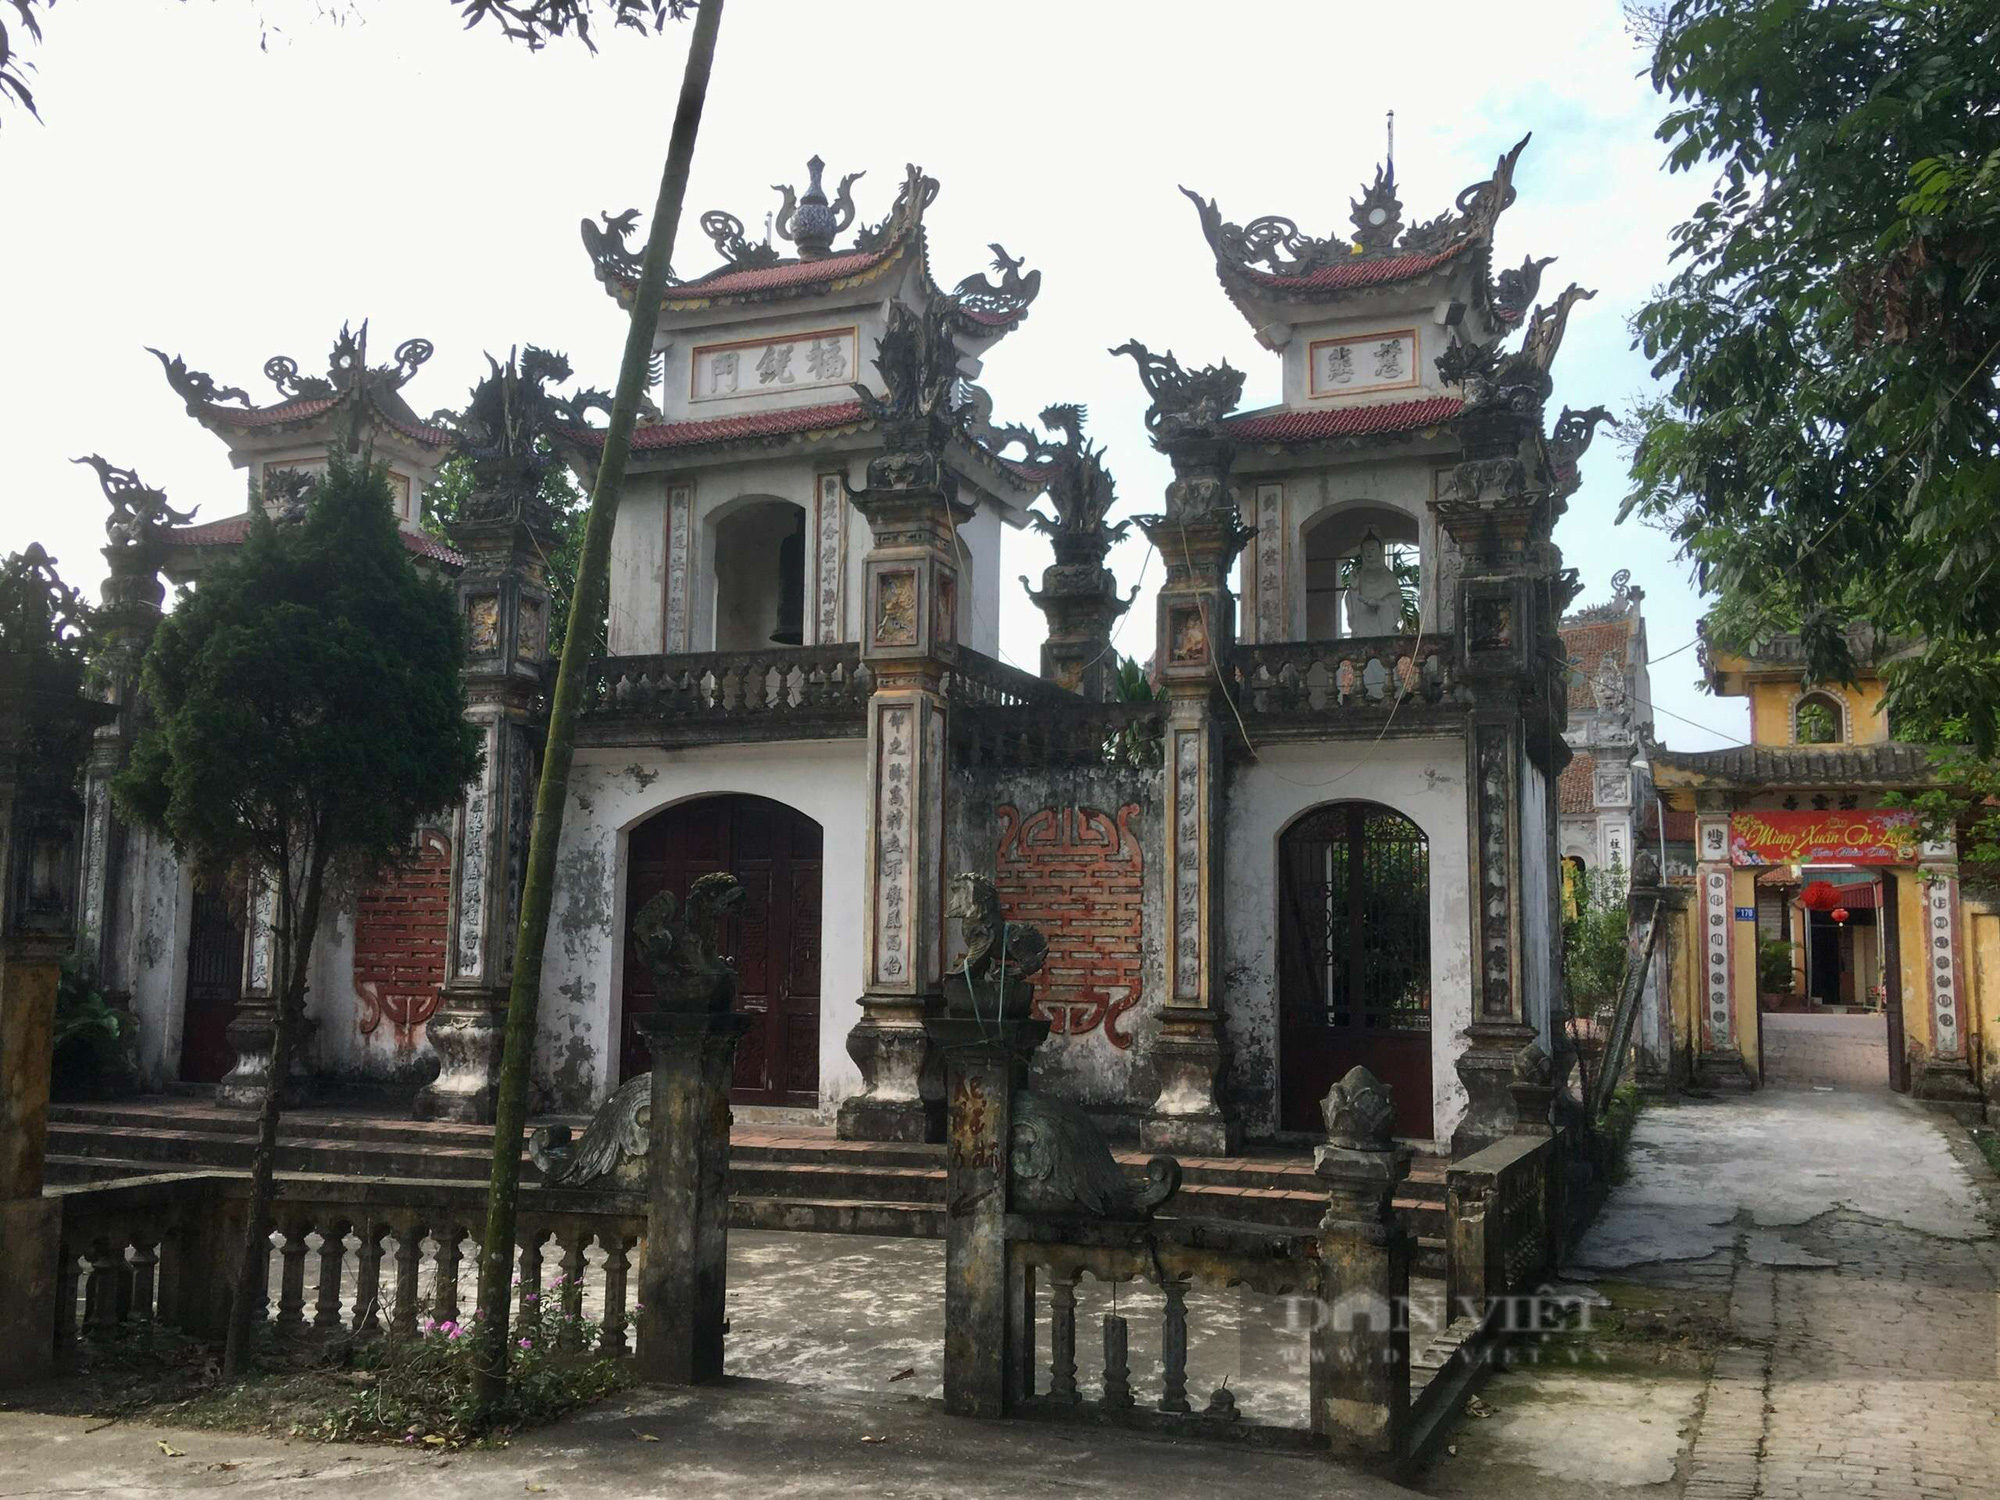 Bí ẩn ngôi chùa Rồi cổ trên 500 năm tuổi ở Hà Nội - Ảnh 1.